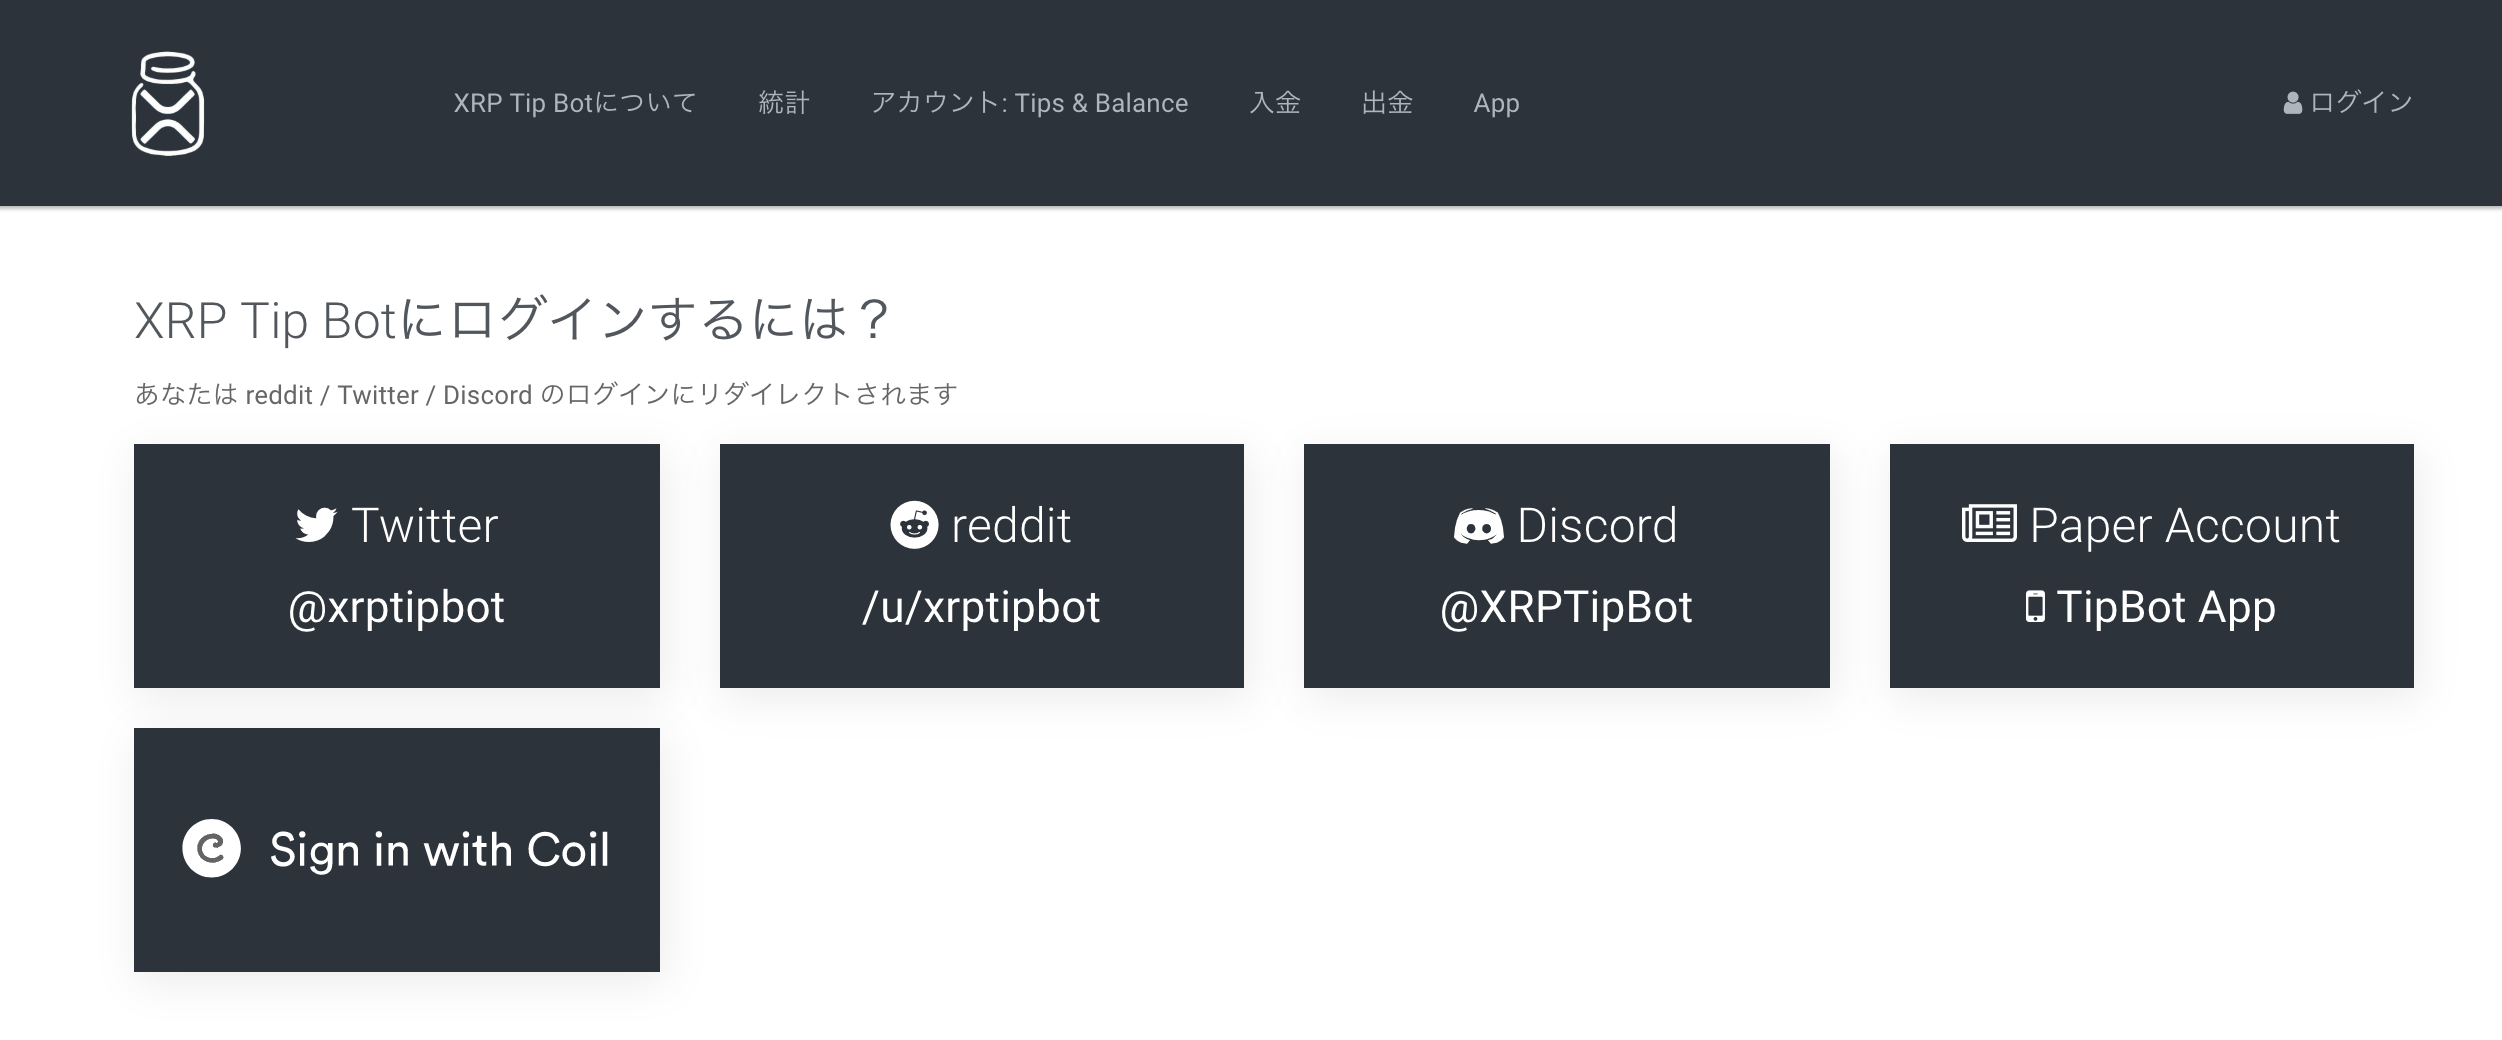 XRP Tip Botのログインページ